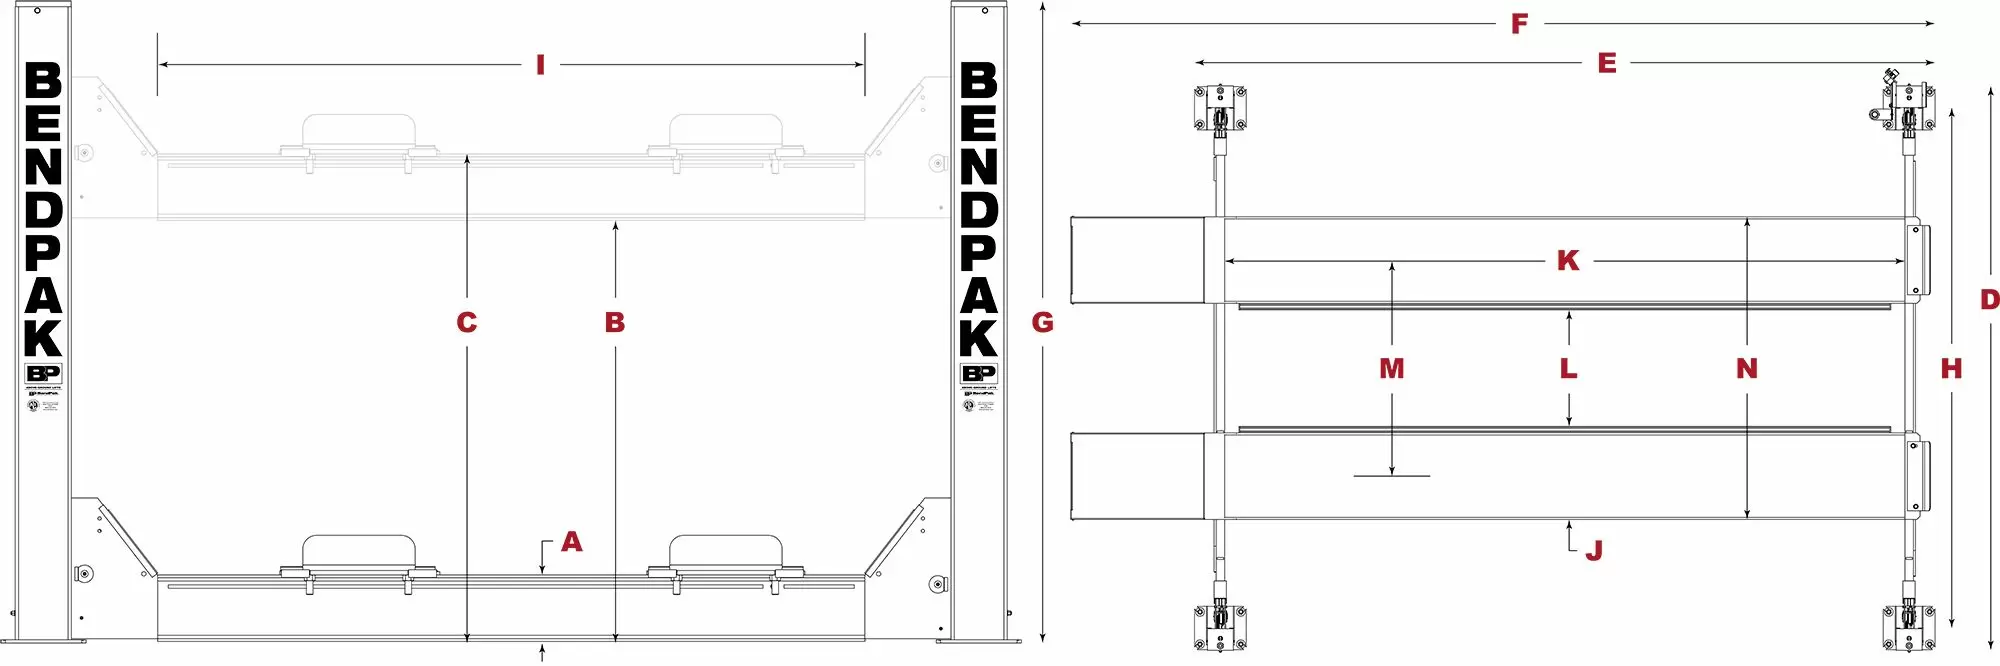 BendPak-Heavy-Duty-Four-Post-Lift-Specifications-Diagram_jpg-1.webp